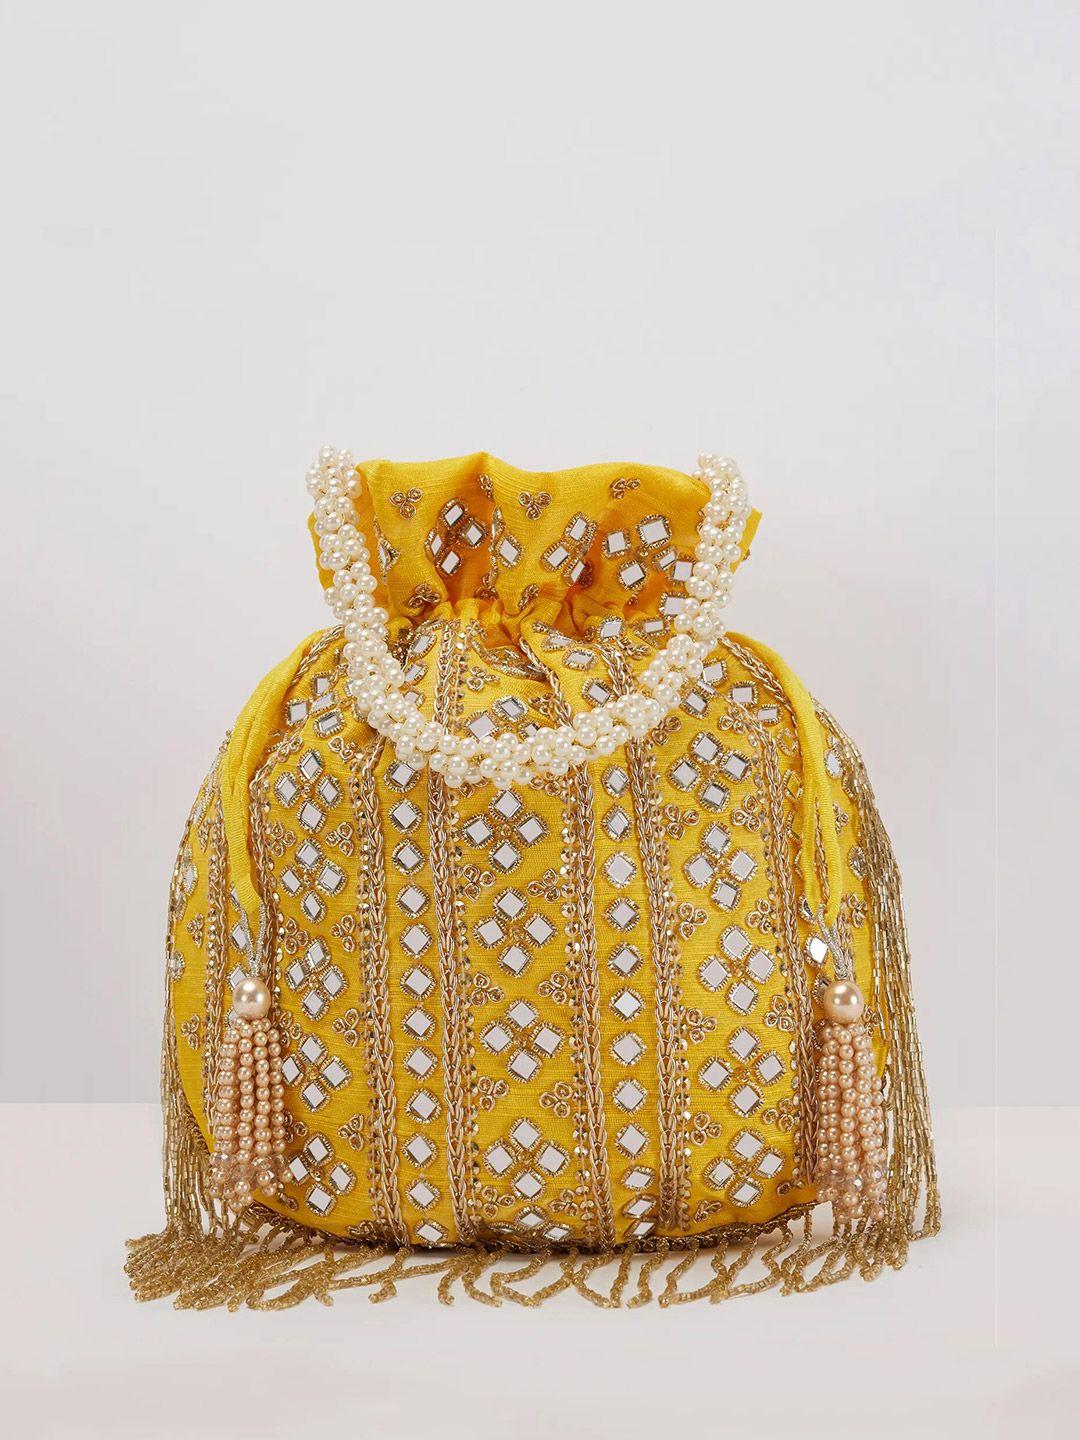 kalki fashion yellow & white embroidered potli clutch